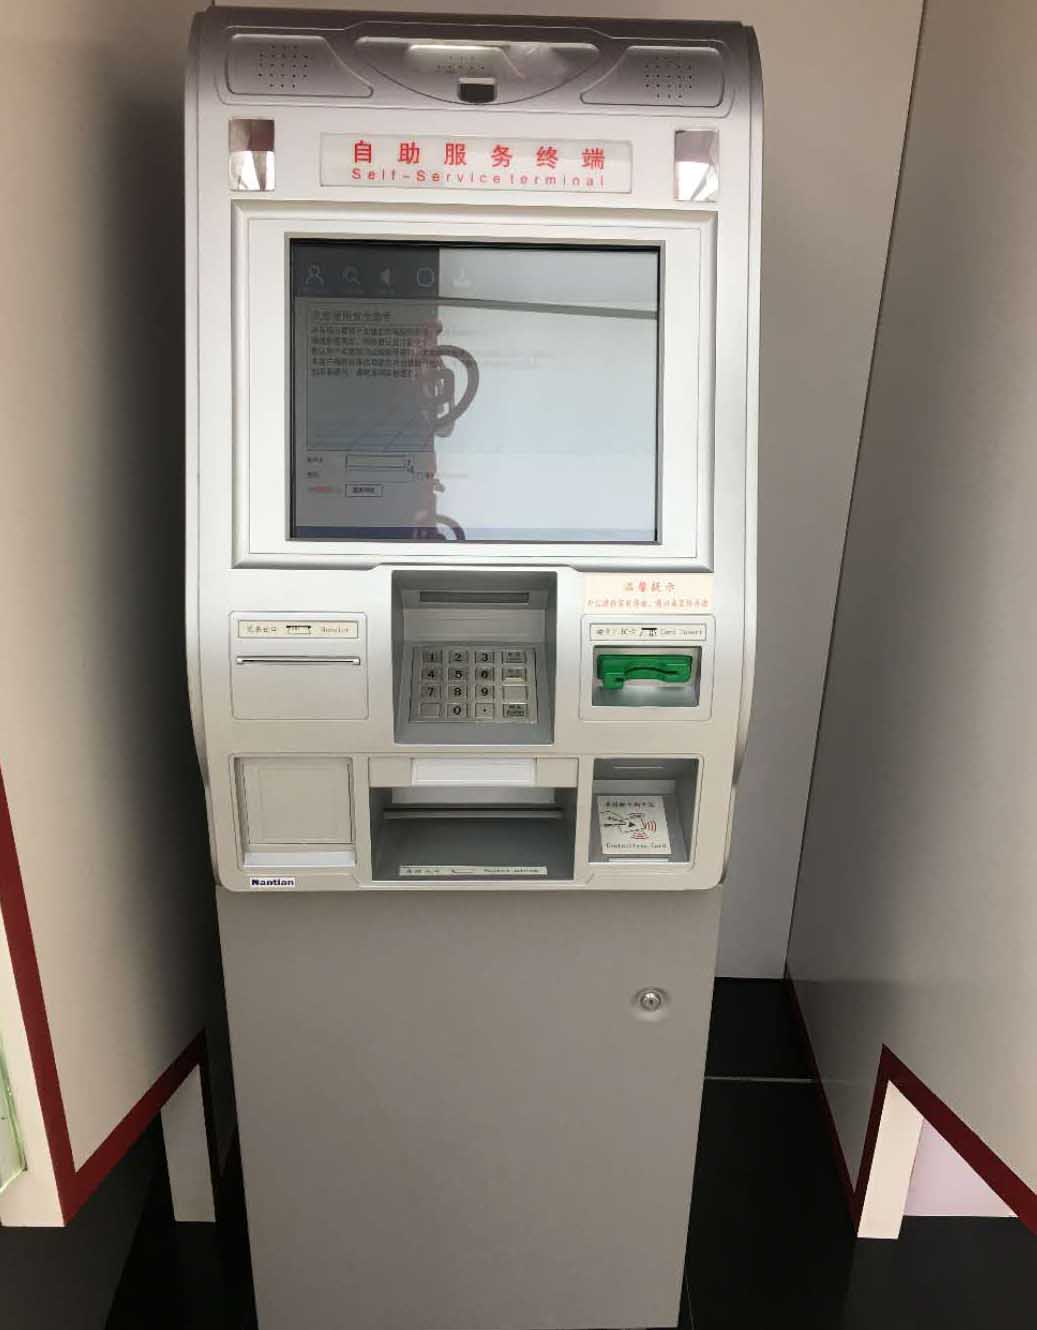 触摸屏玻ios/安卓/手机版app下载及条纹玻ios/安卓/手机版app下载在银行ATM机上的应用